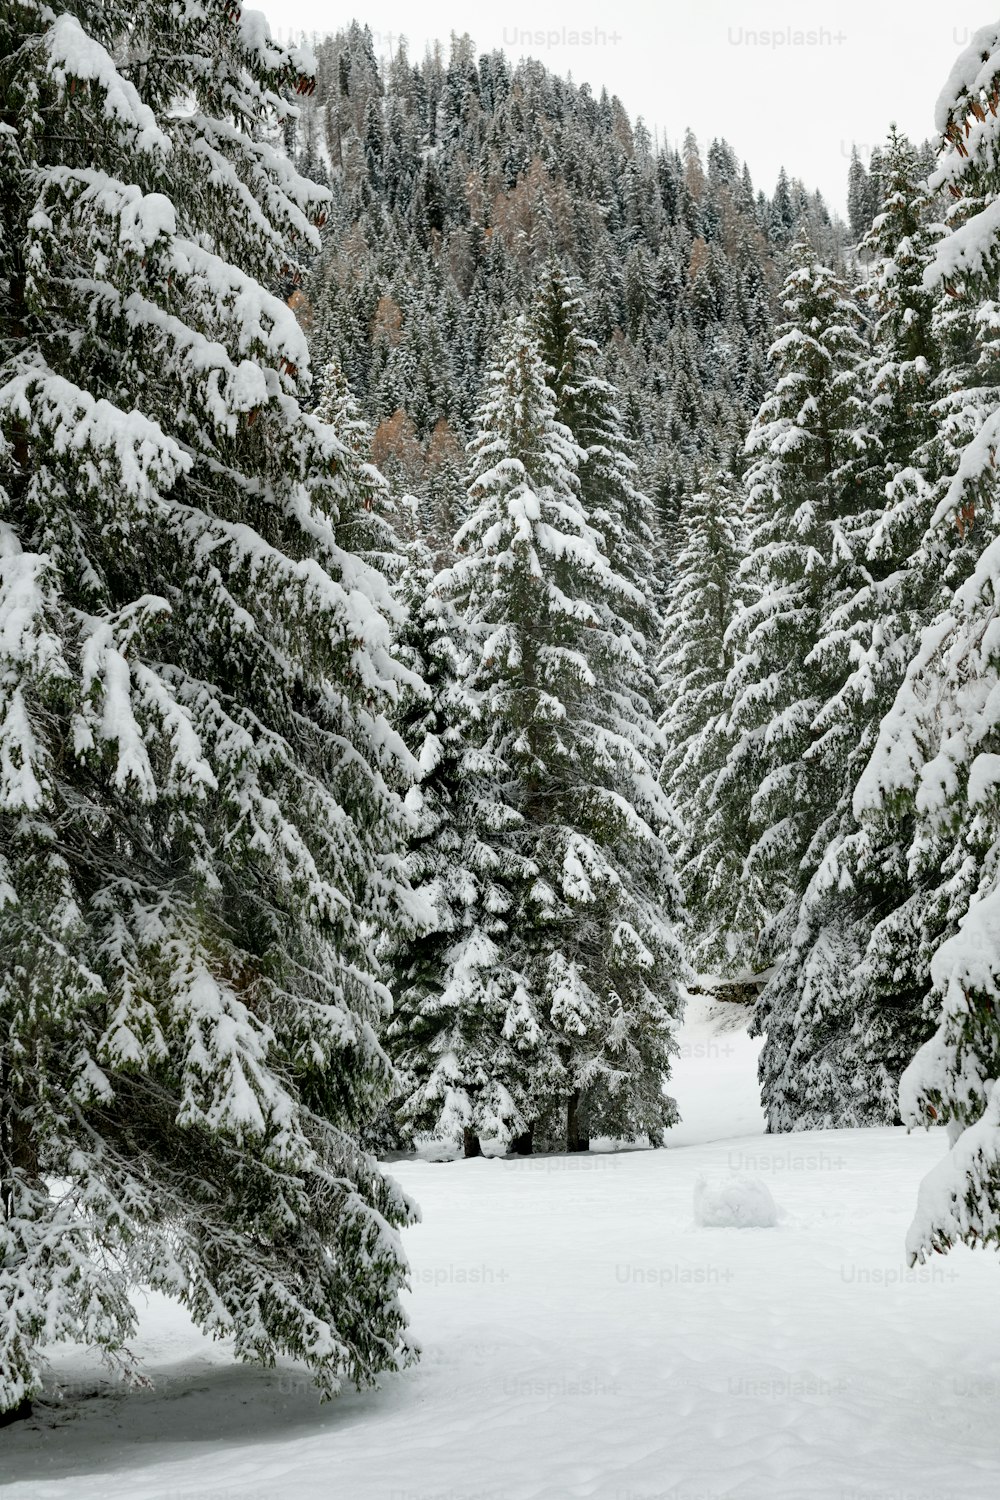 Une personne sur des skis au milieu d’une forêt enneigée